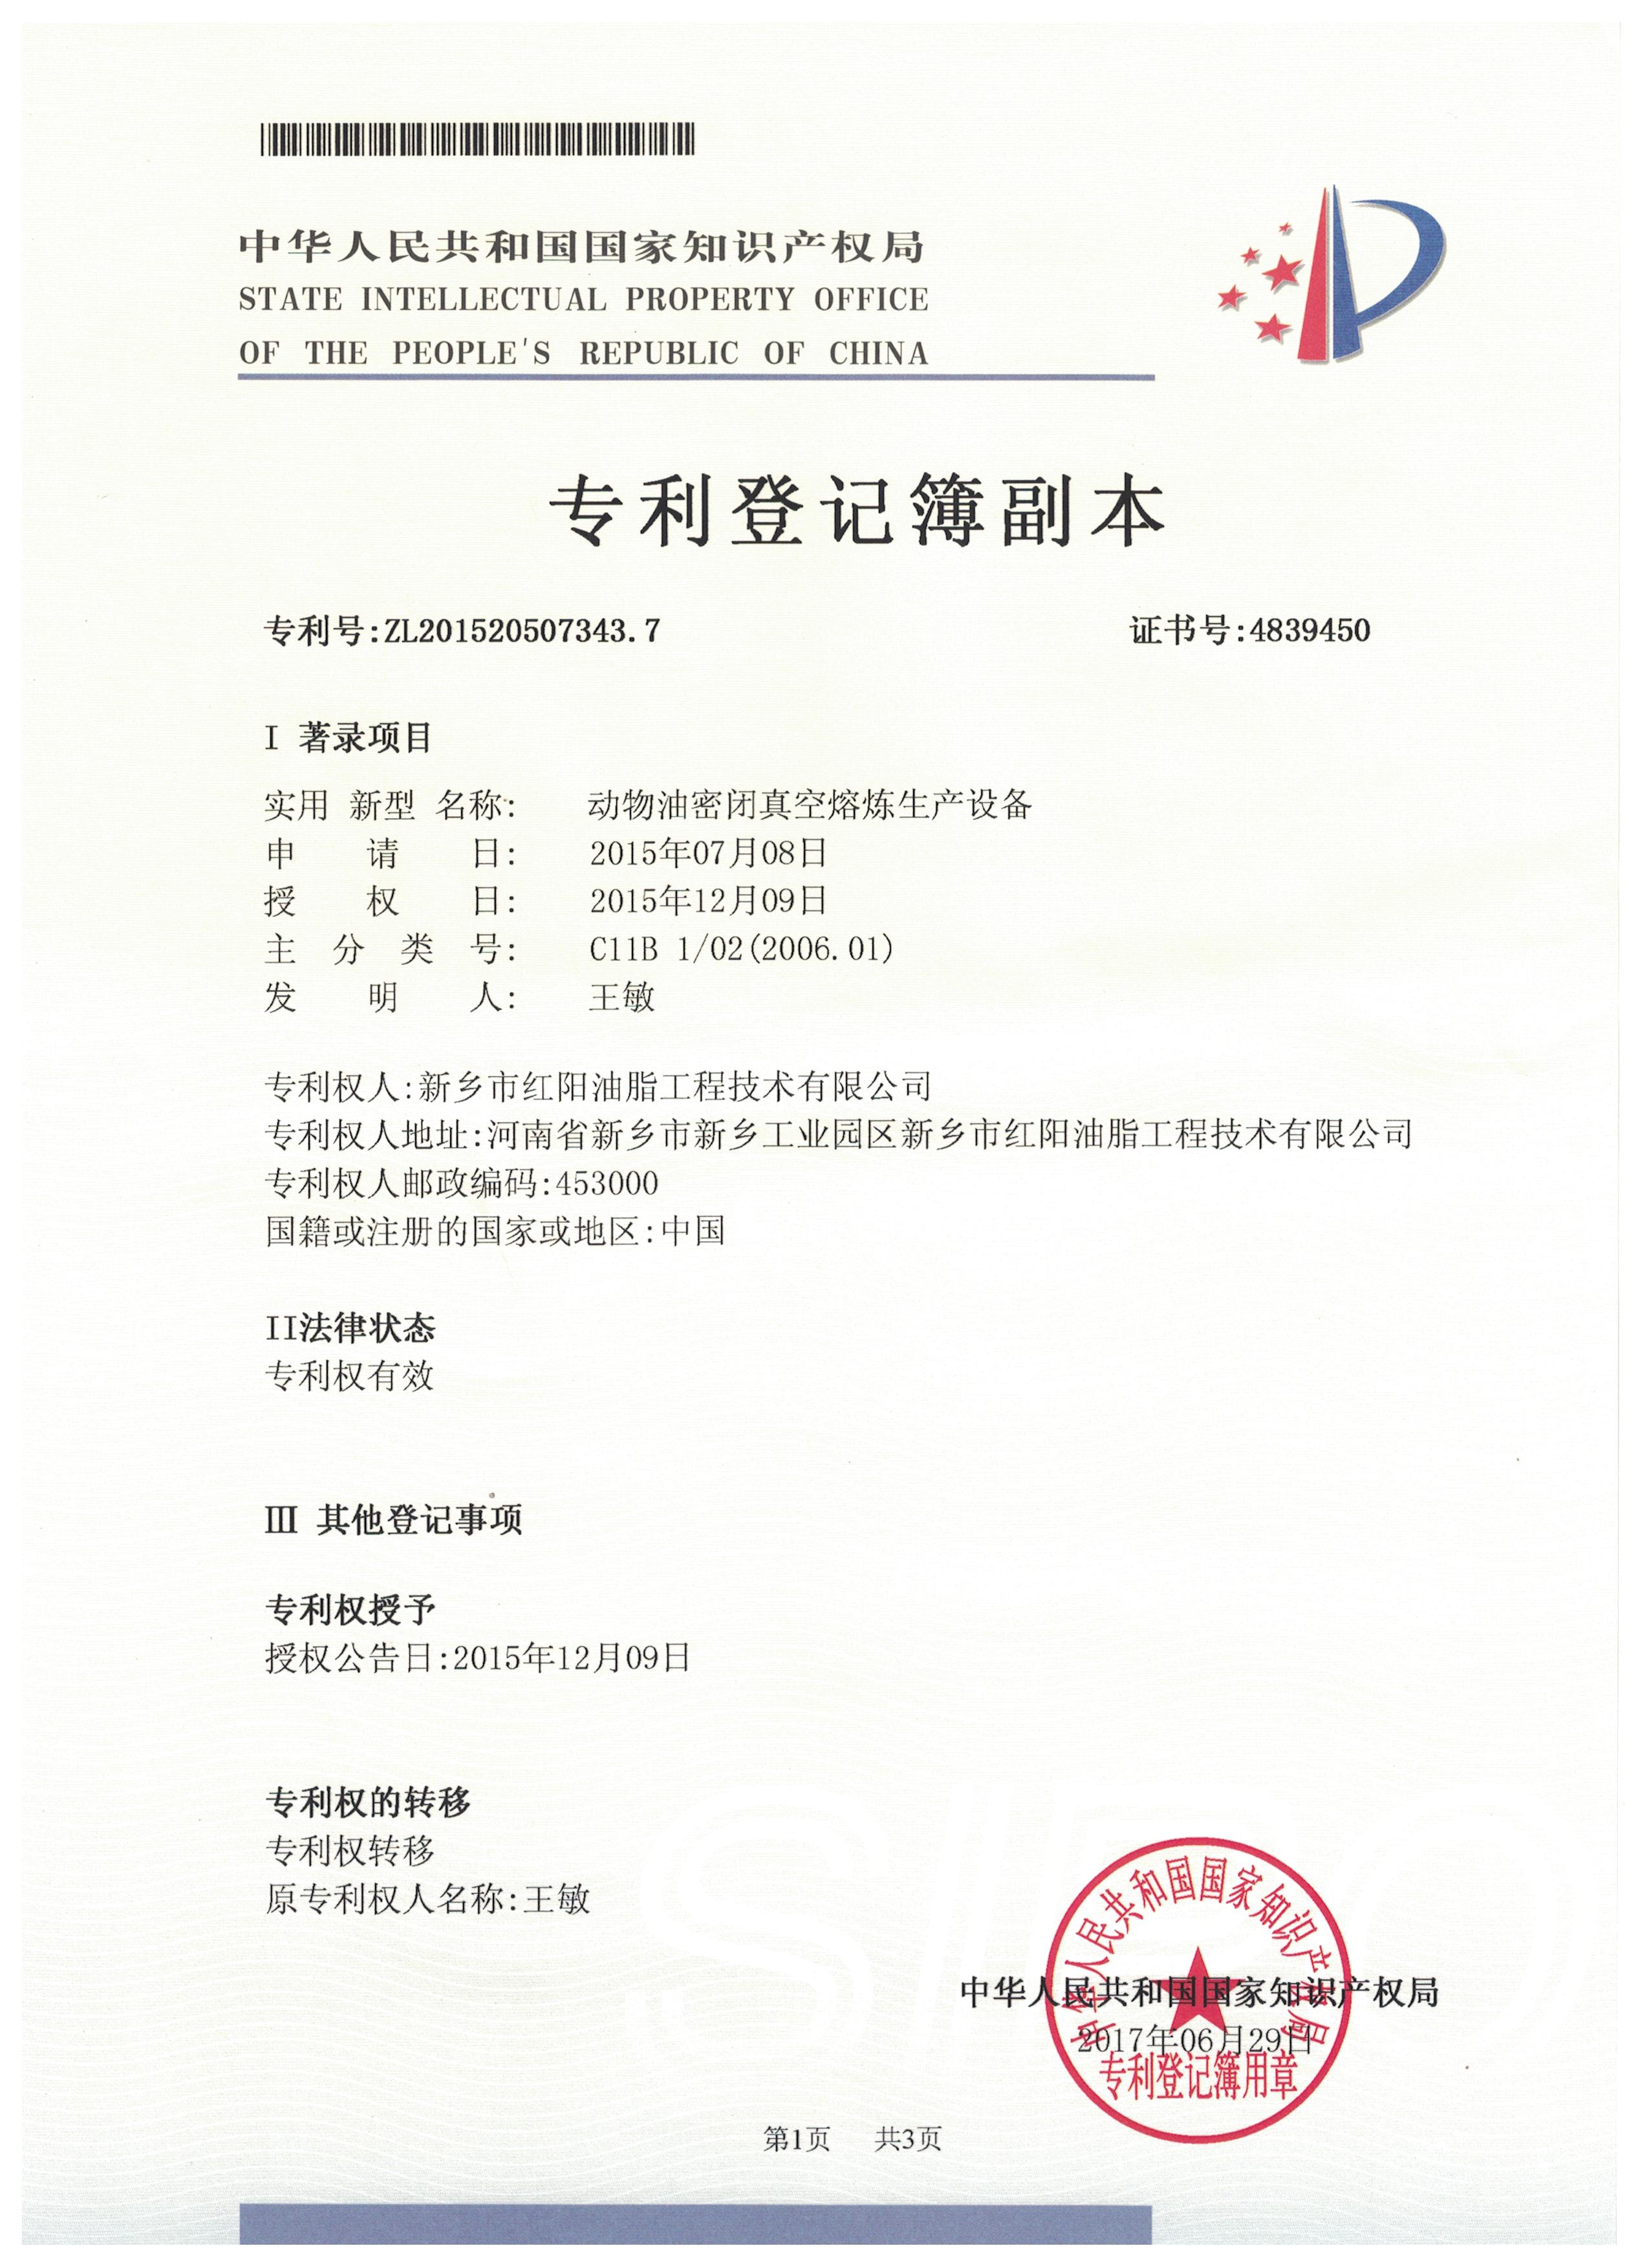 动物油真空熬炼生产线专利(ZL201520507343.7)